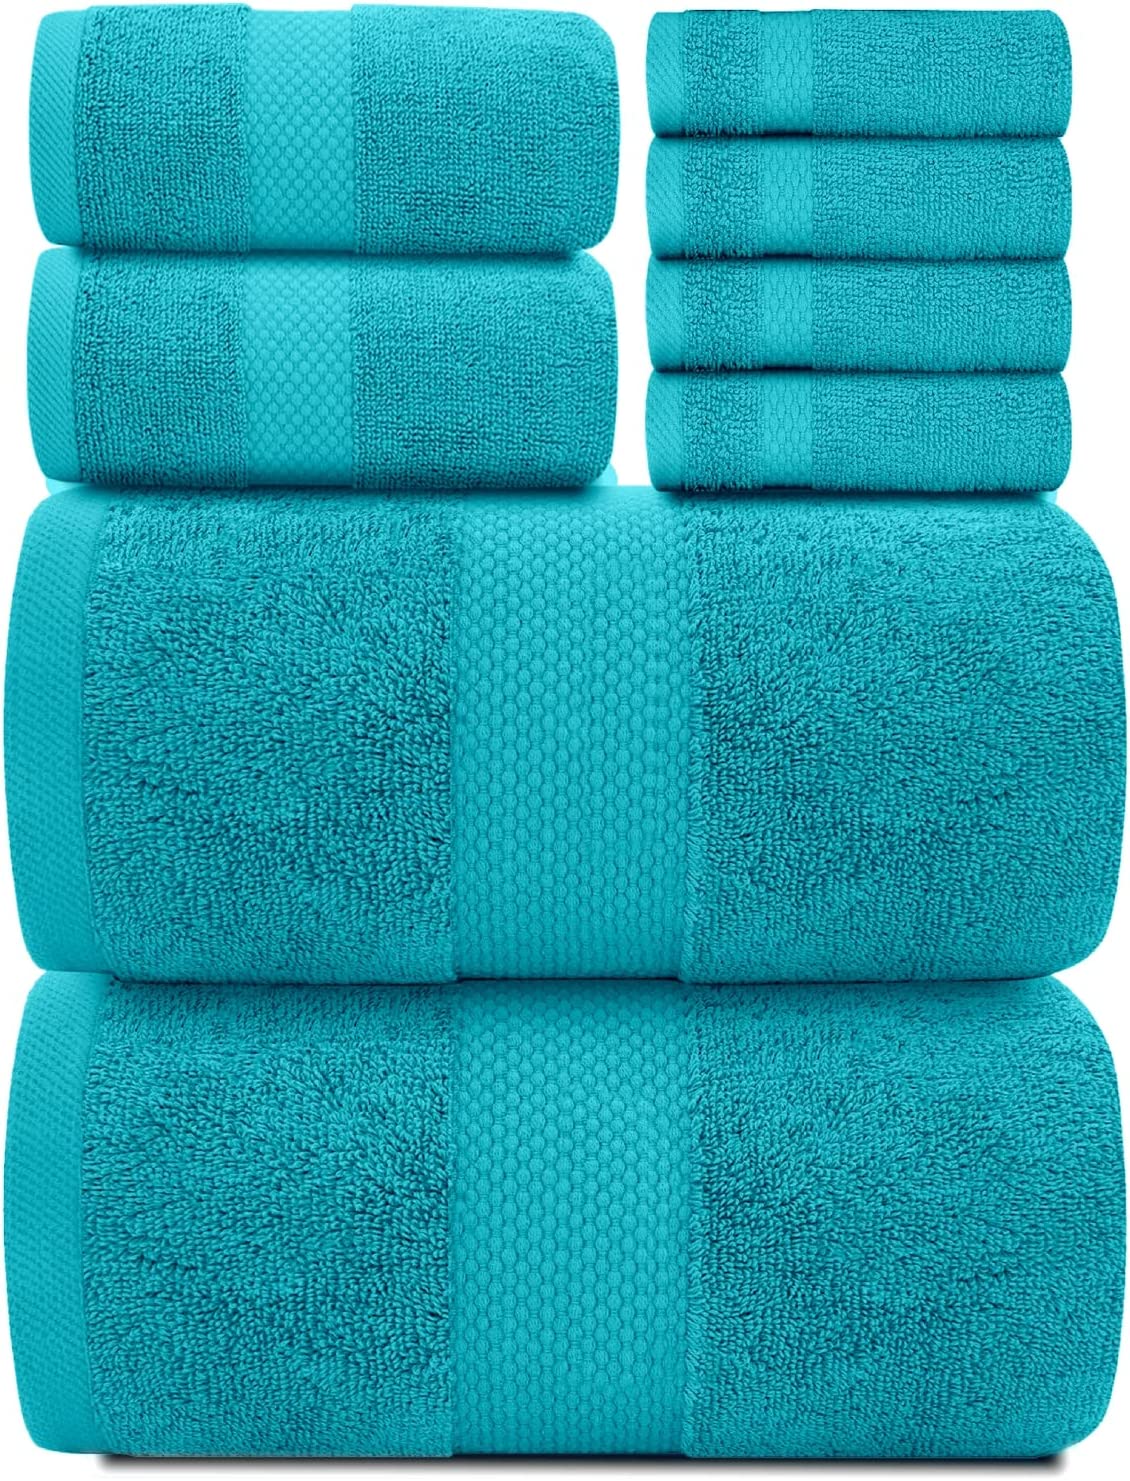 Hotel Collection 8Pc set Aqua towels